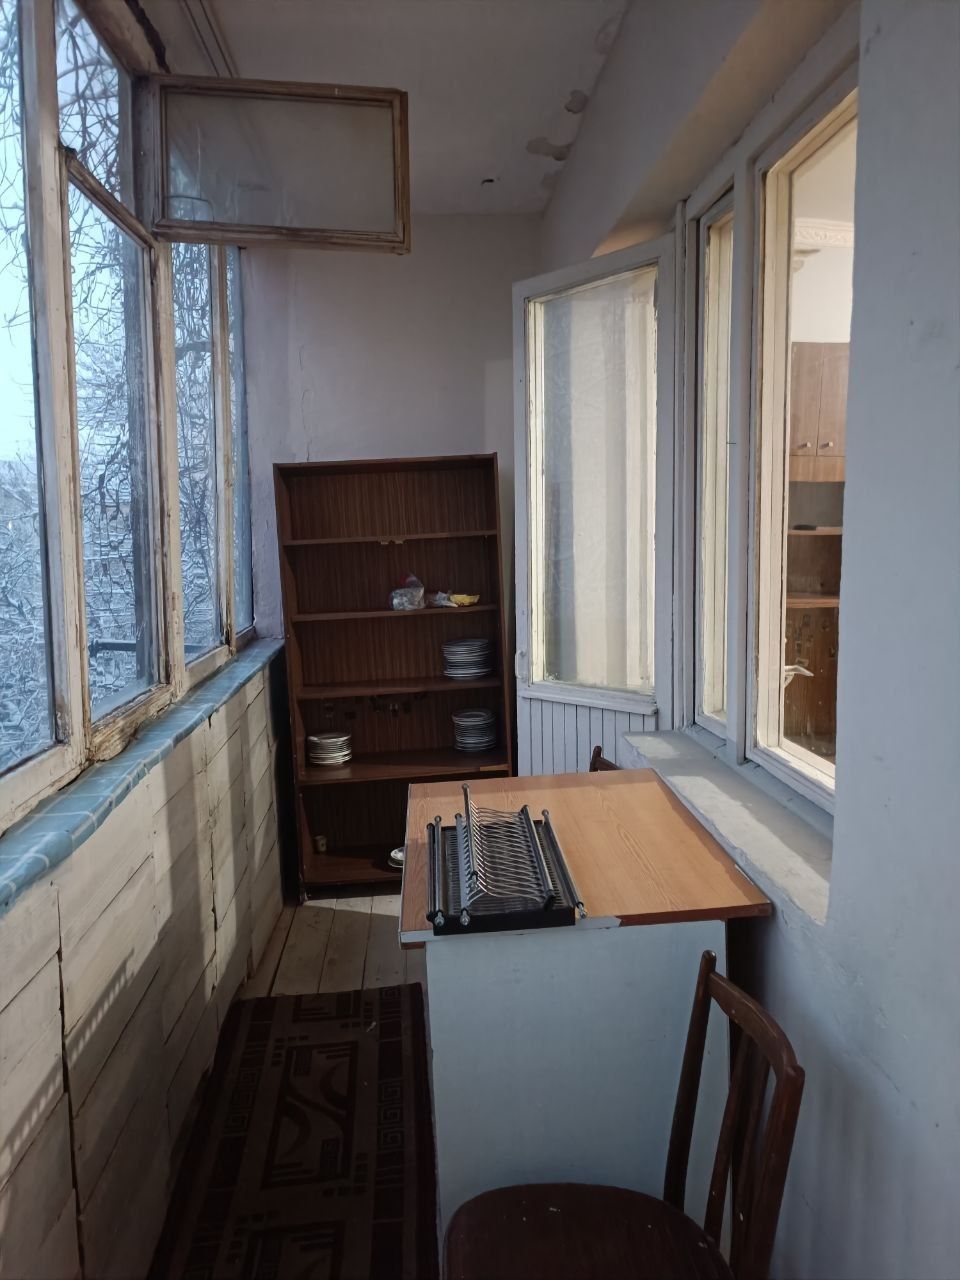 Продаётся уютная 1-комнатная квартира в кирпичном доме, Юнусабад, 18КВ